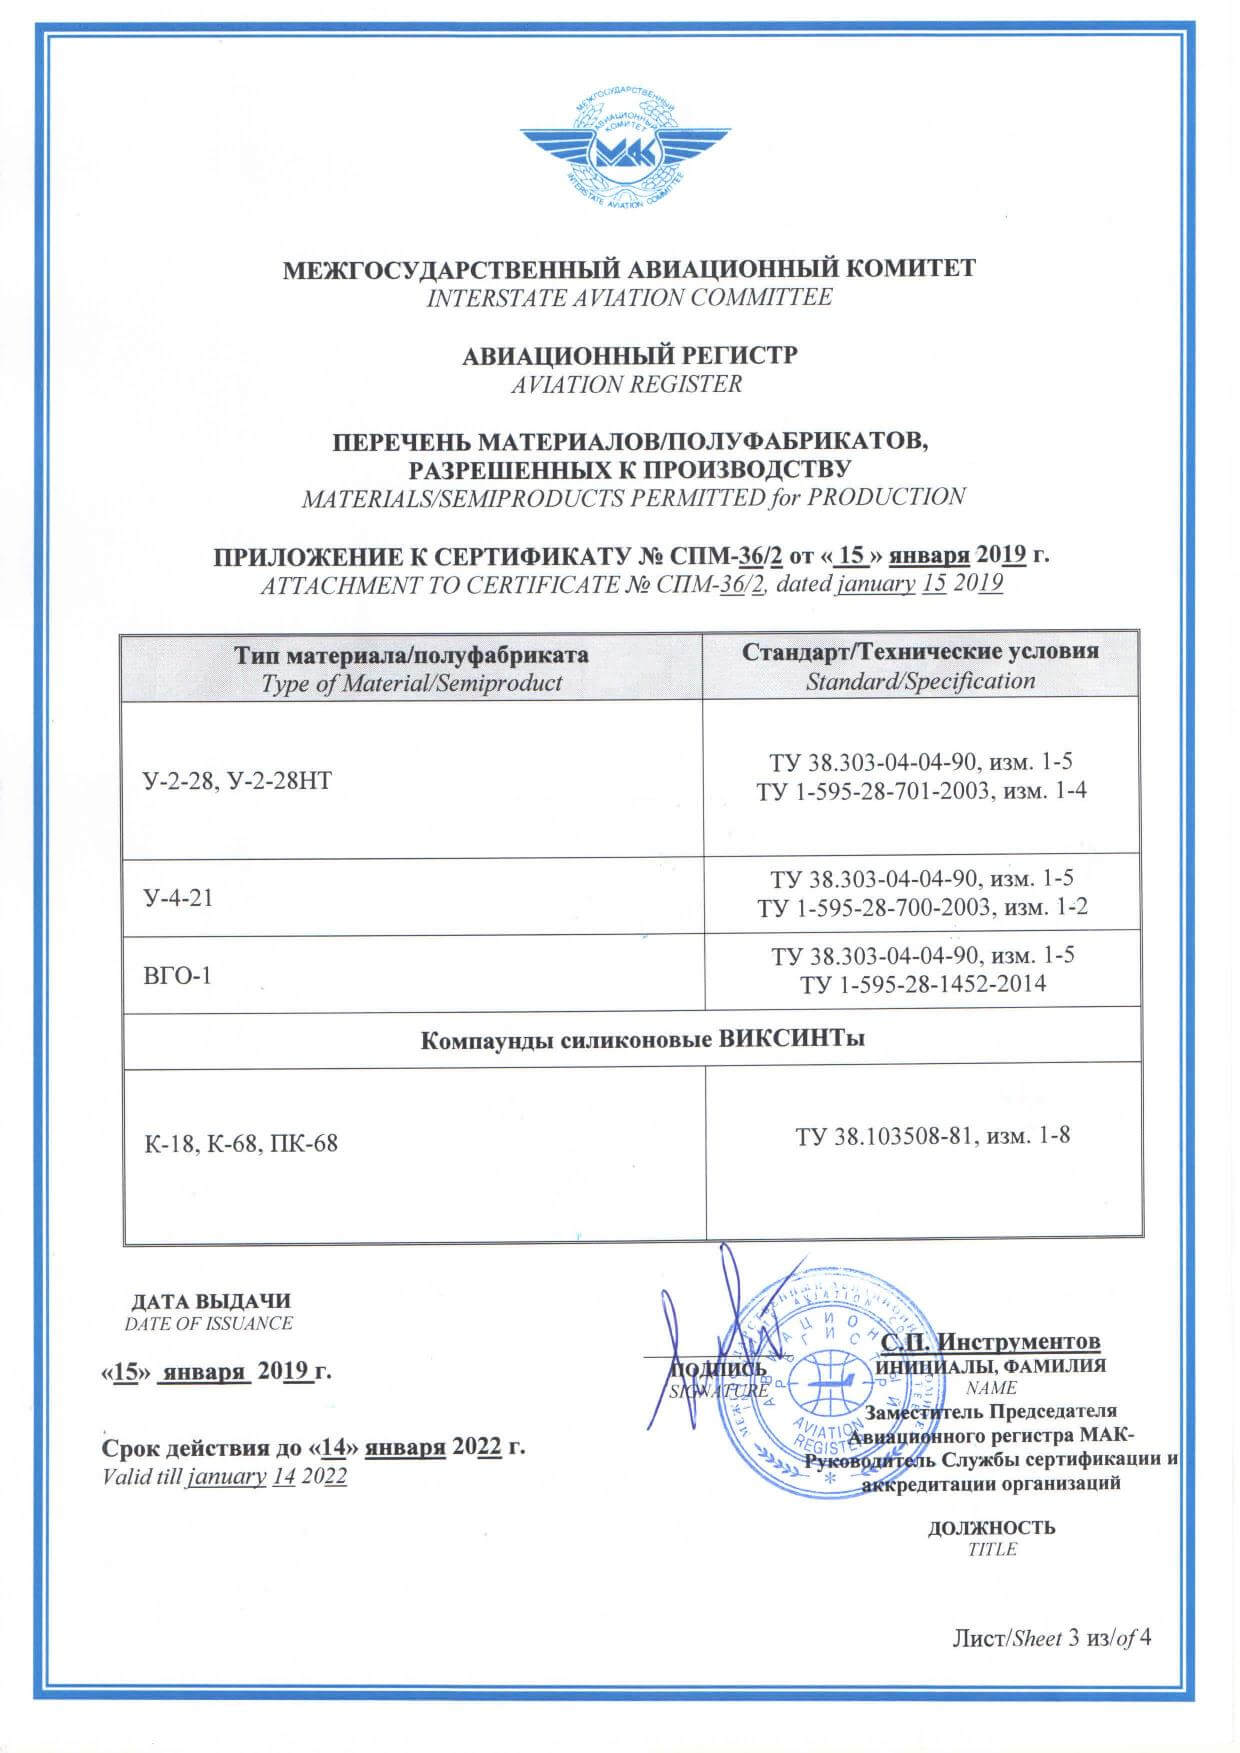 Сертификат на производство авиационных материалов